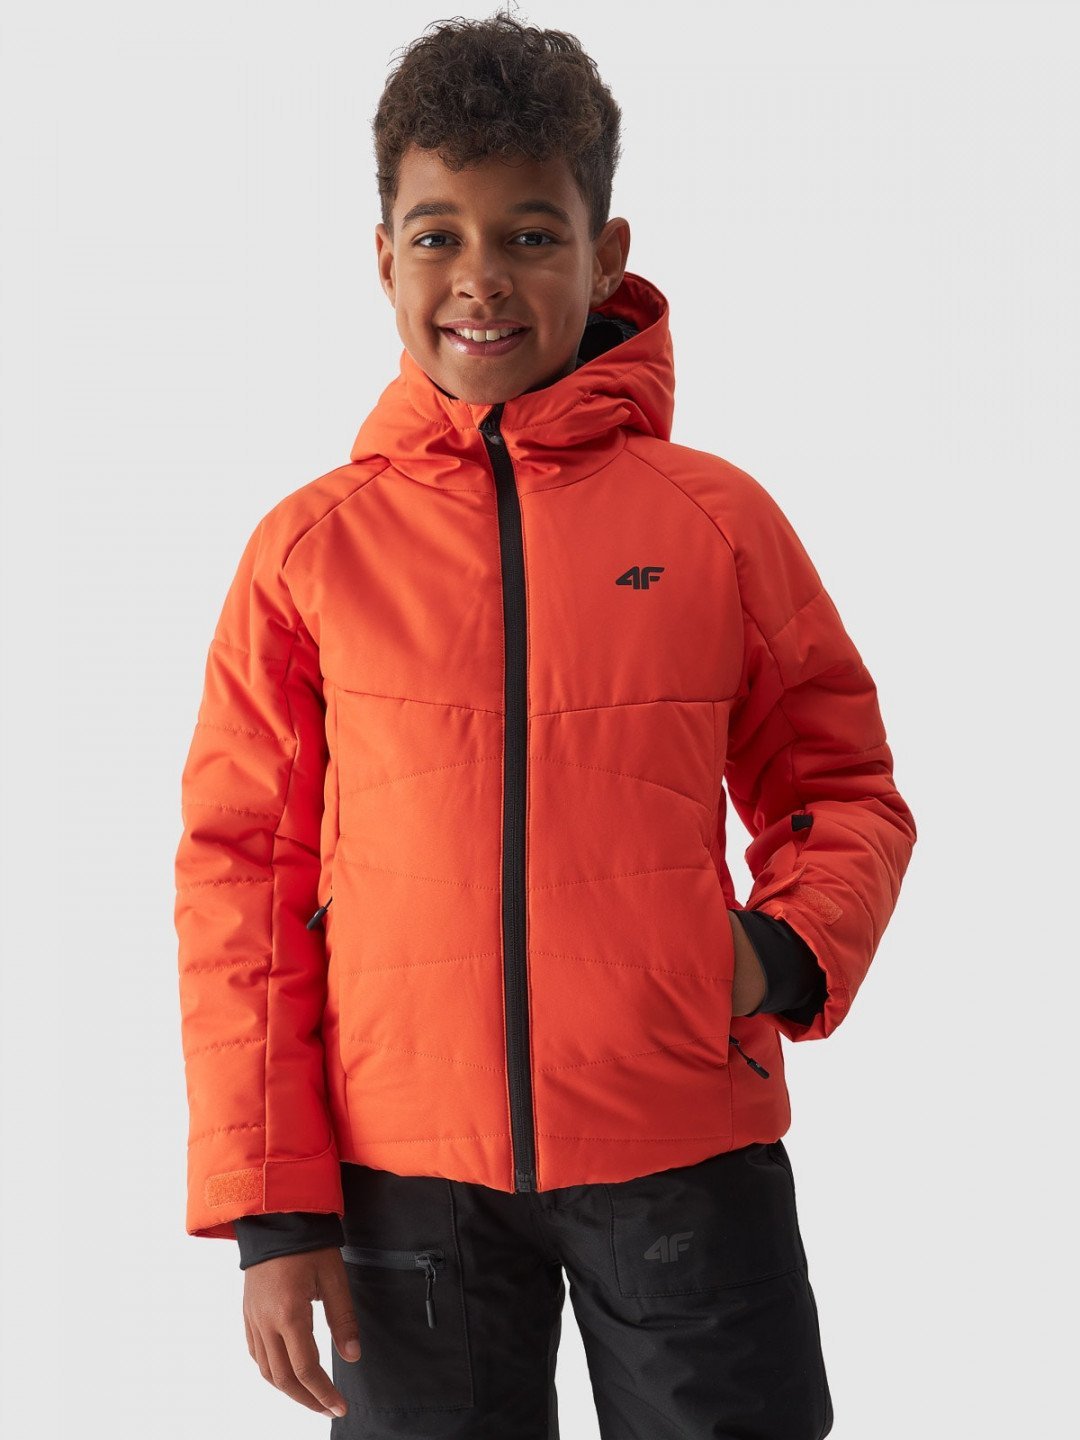 Chlapecká lyžařská péřová bunda membrána 5000 – oranžová